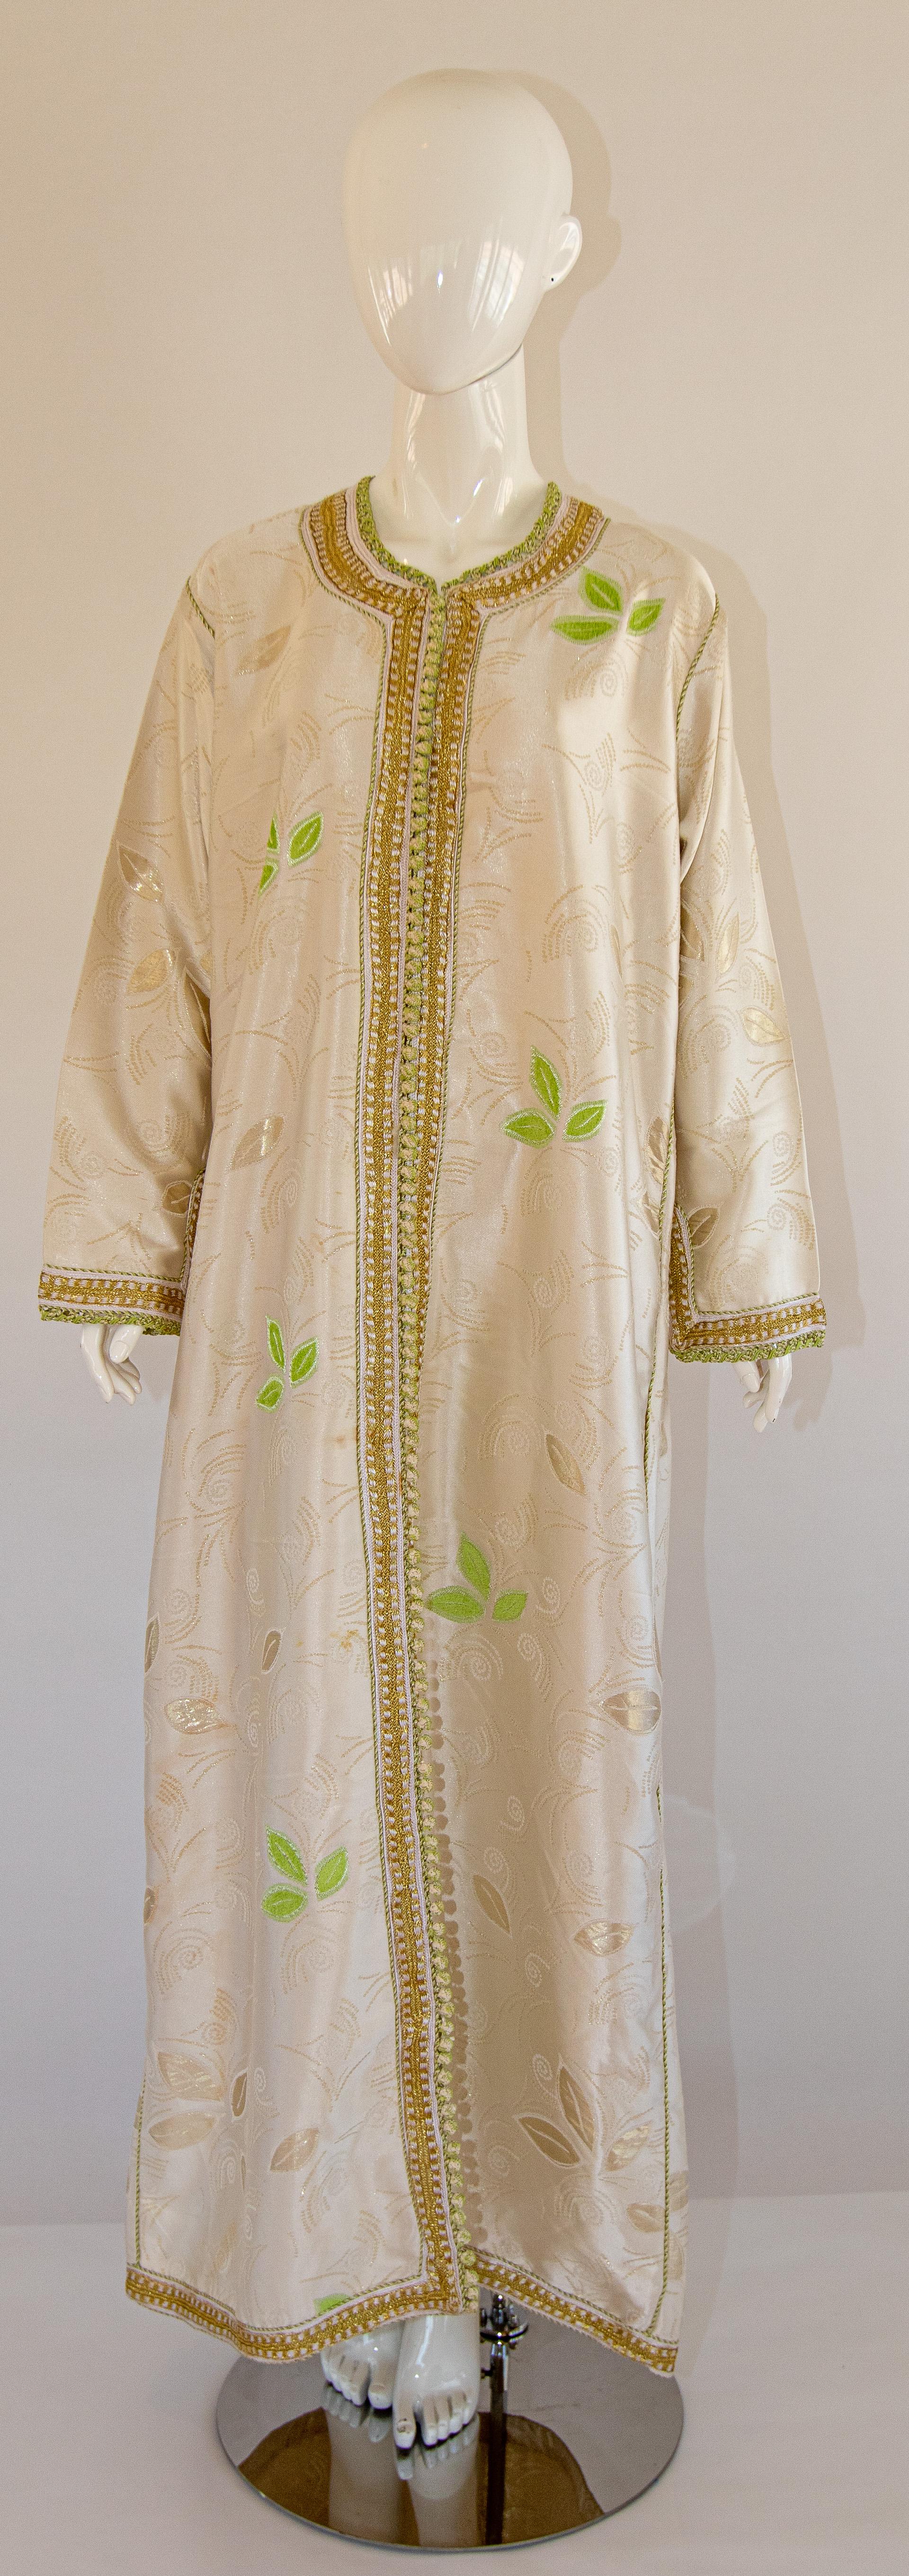 Elégant caftan marocain en soie damassée or, magnifique robe d'hôtesse vintage.
Motif floral vert clair sur caftan en soie, datant des années 1970.
Robe caftan exotique orientale longue à manches longues en tissu brocart chatoyant beige et or.
Robe